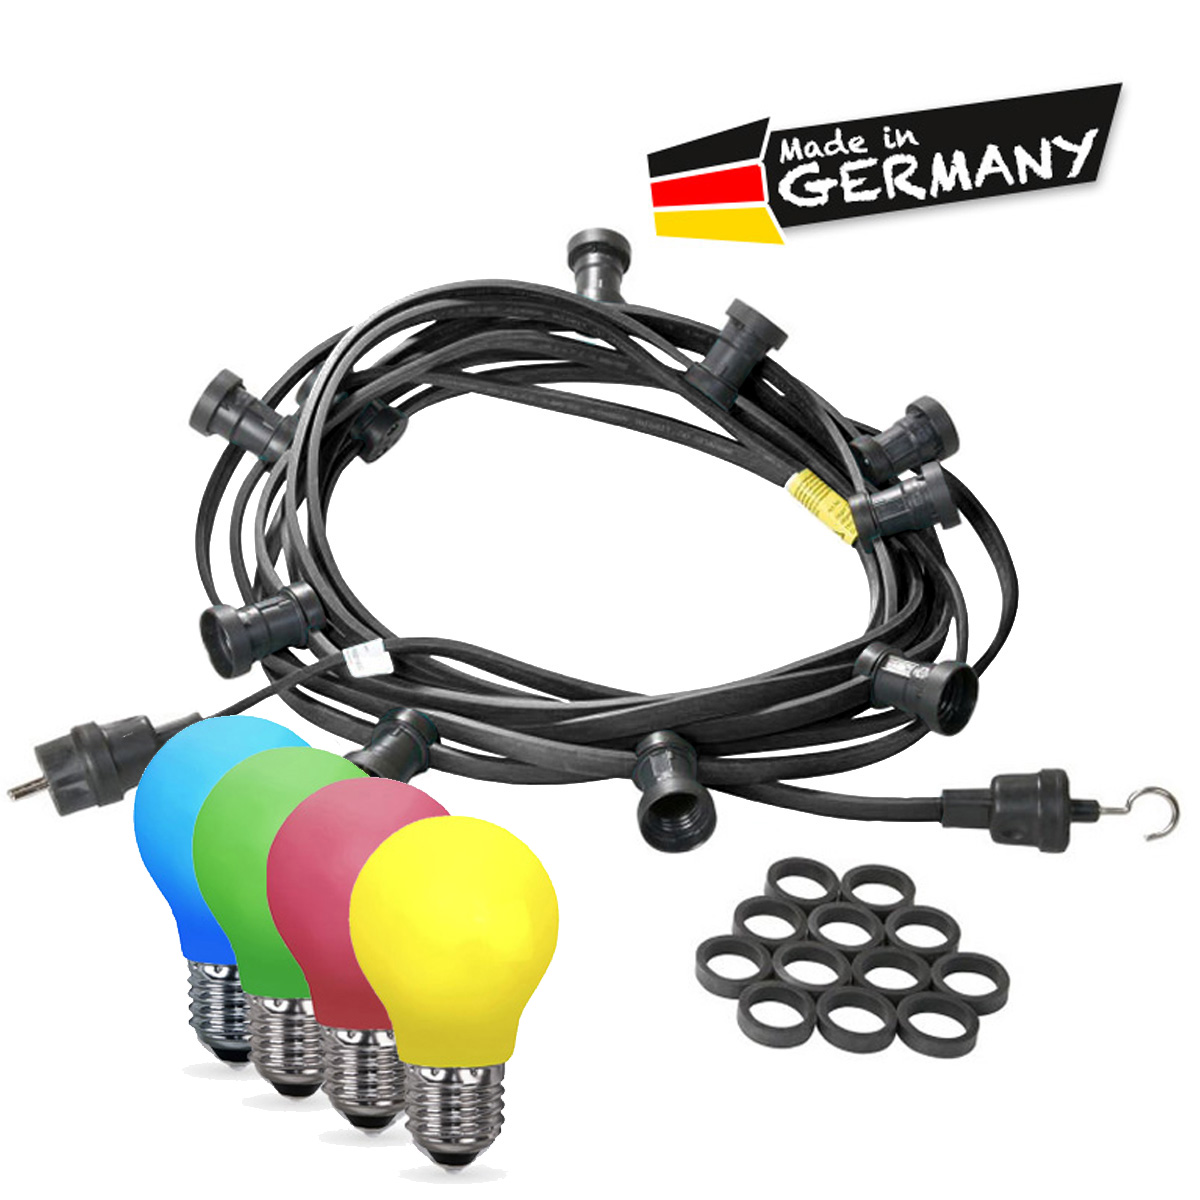 Illu-/Partylichterkette 40m - Außenlichterkette - Made in Germany - 60 x bunte LED Tropfenlampe